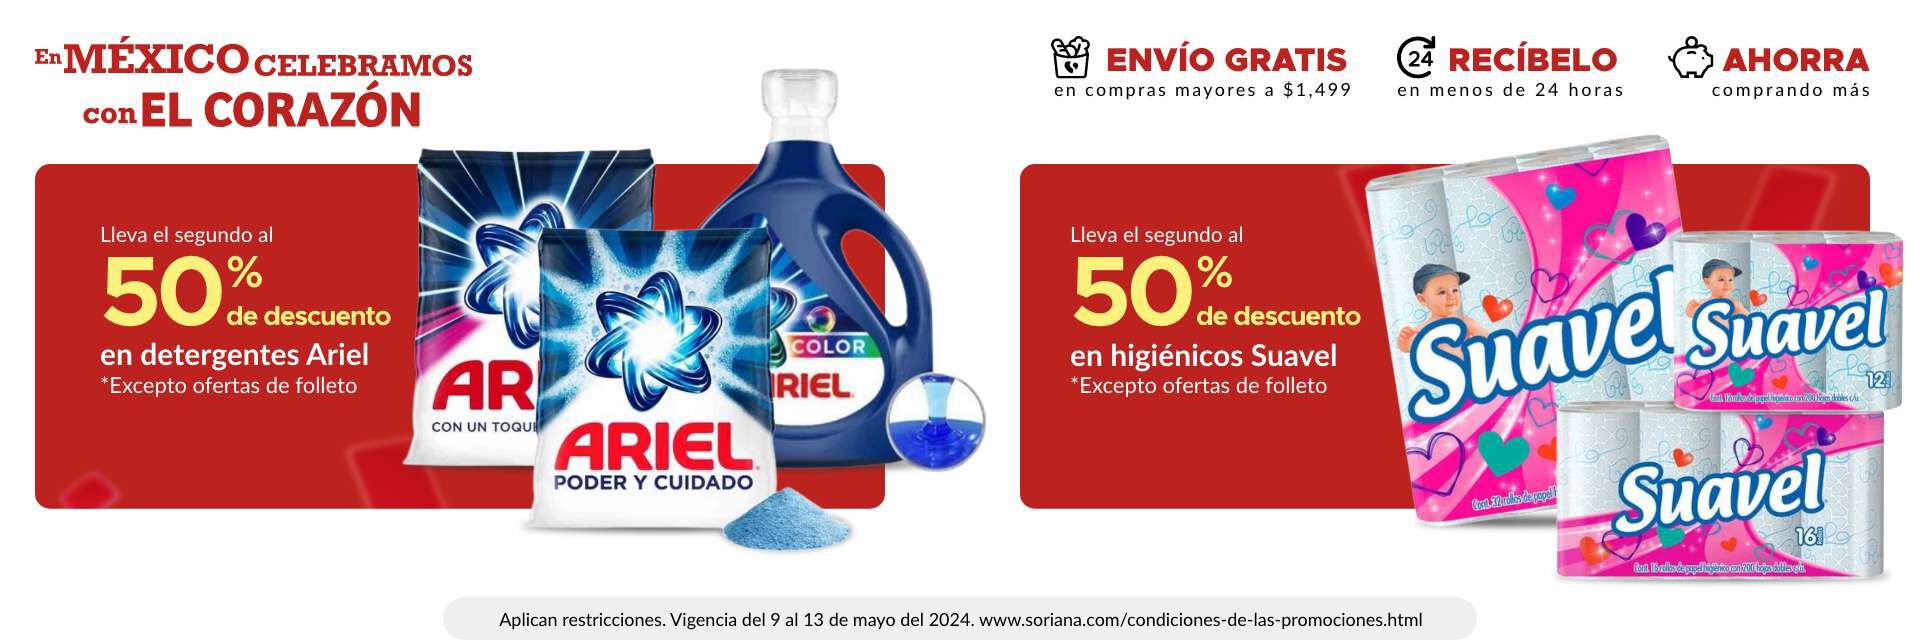 2do al 50% de descuento en detergentes Ariel (excepto ofertas de folleto)